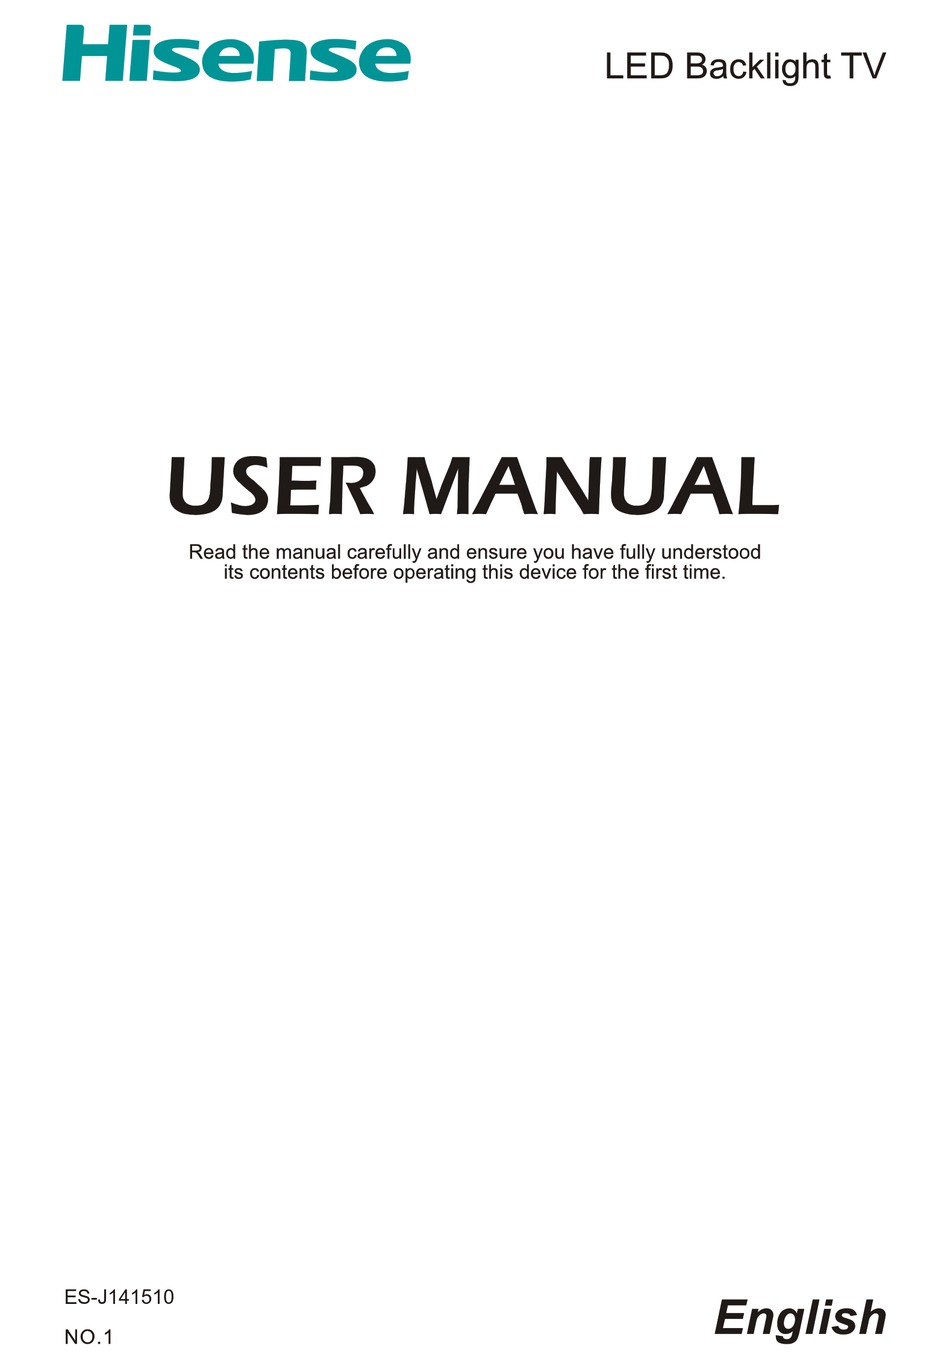 HISENSE LTDN50D36TUK USER MANUAL Pdf Download | ManualsLib